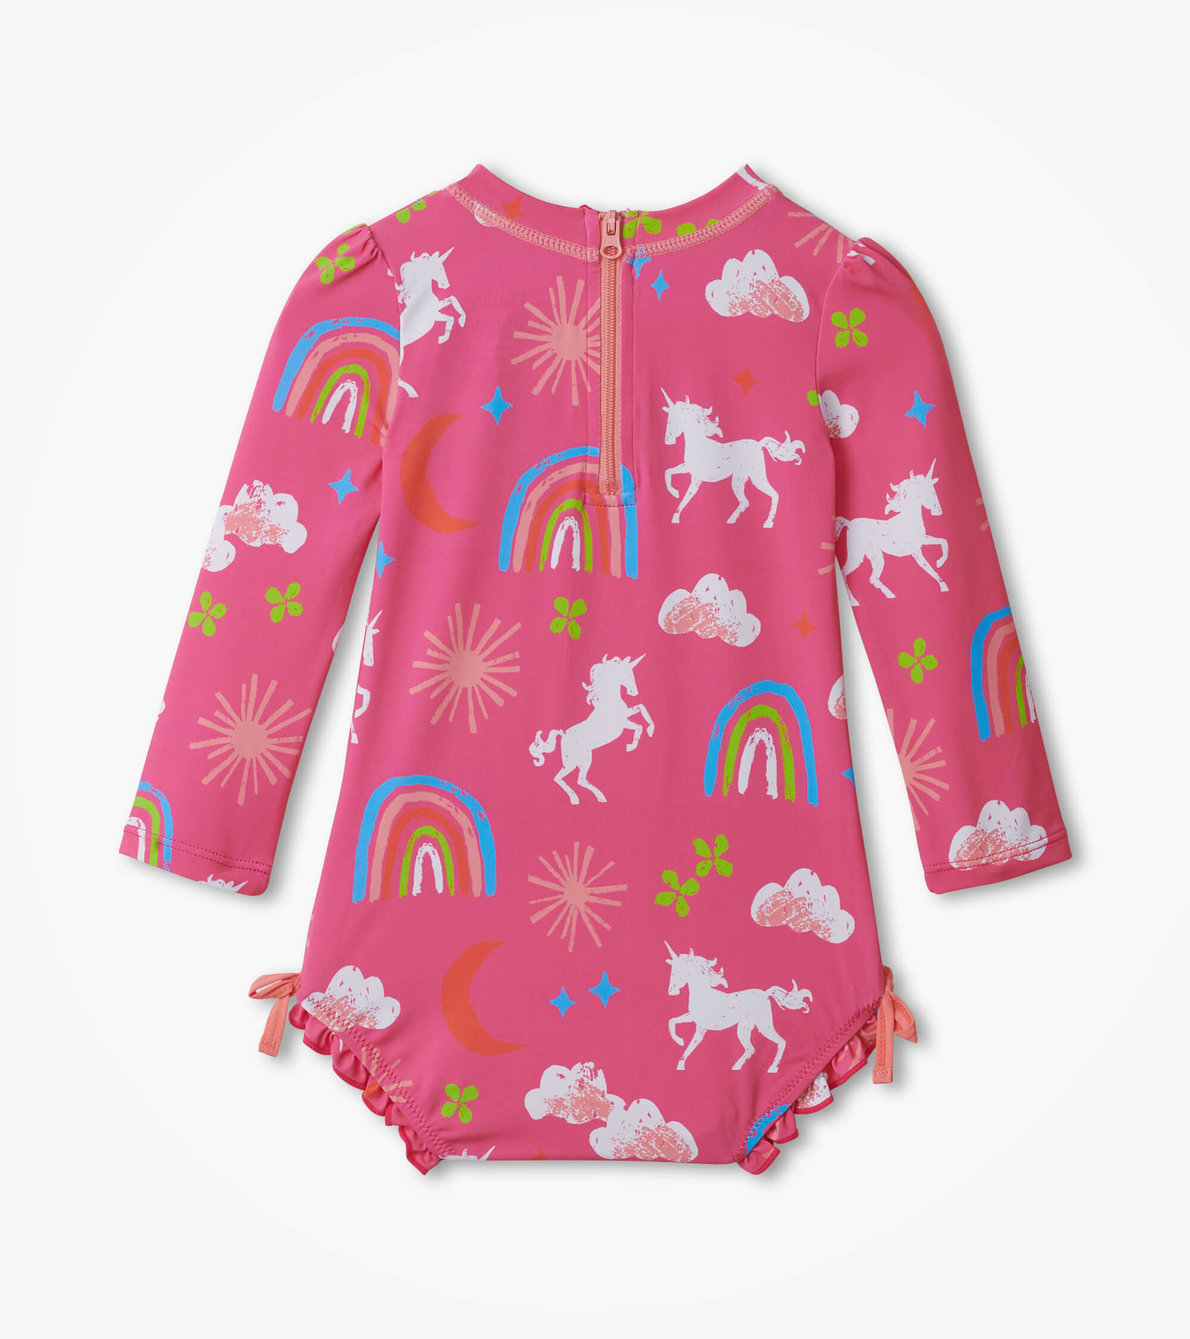 View larger image of Unicorns & Rainbows Baby Rashguard Swimsuit